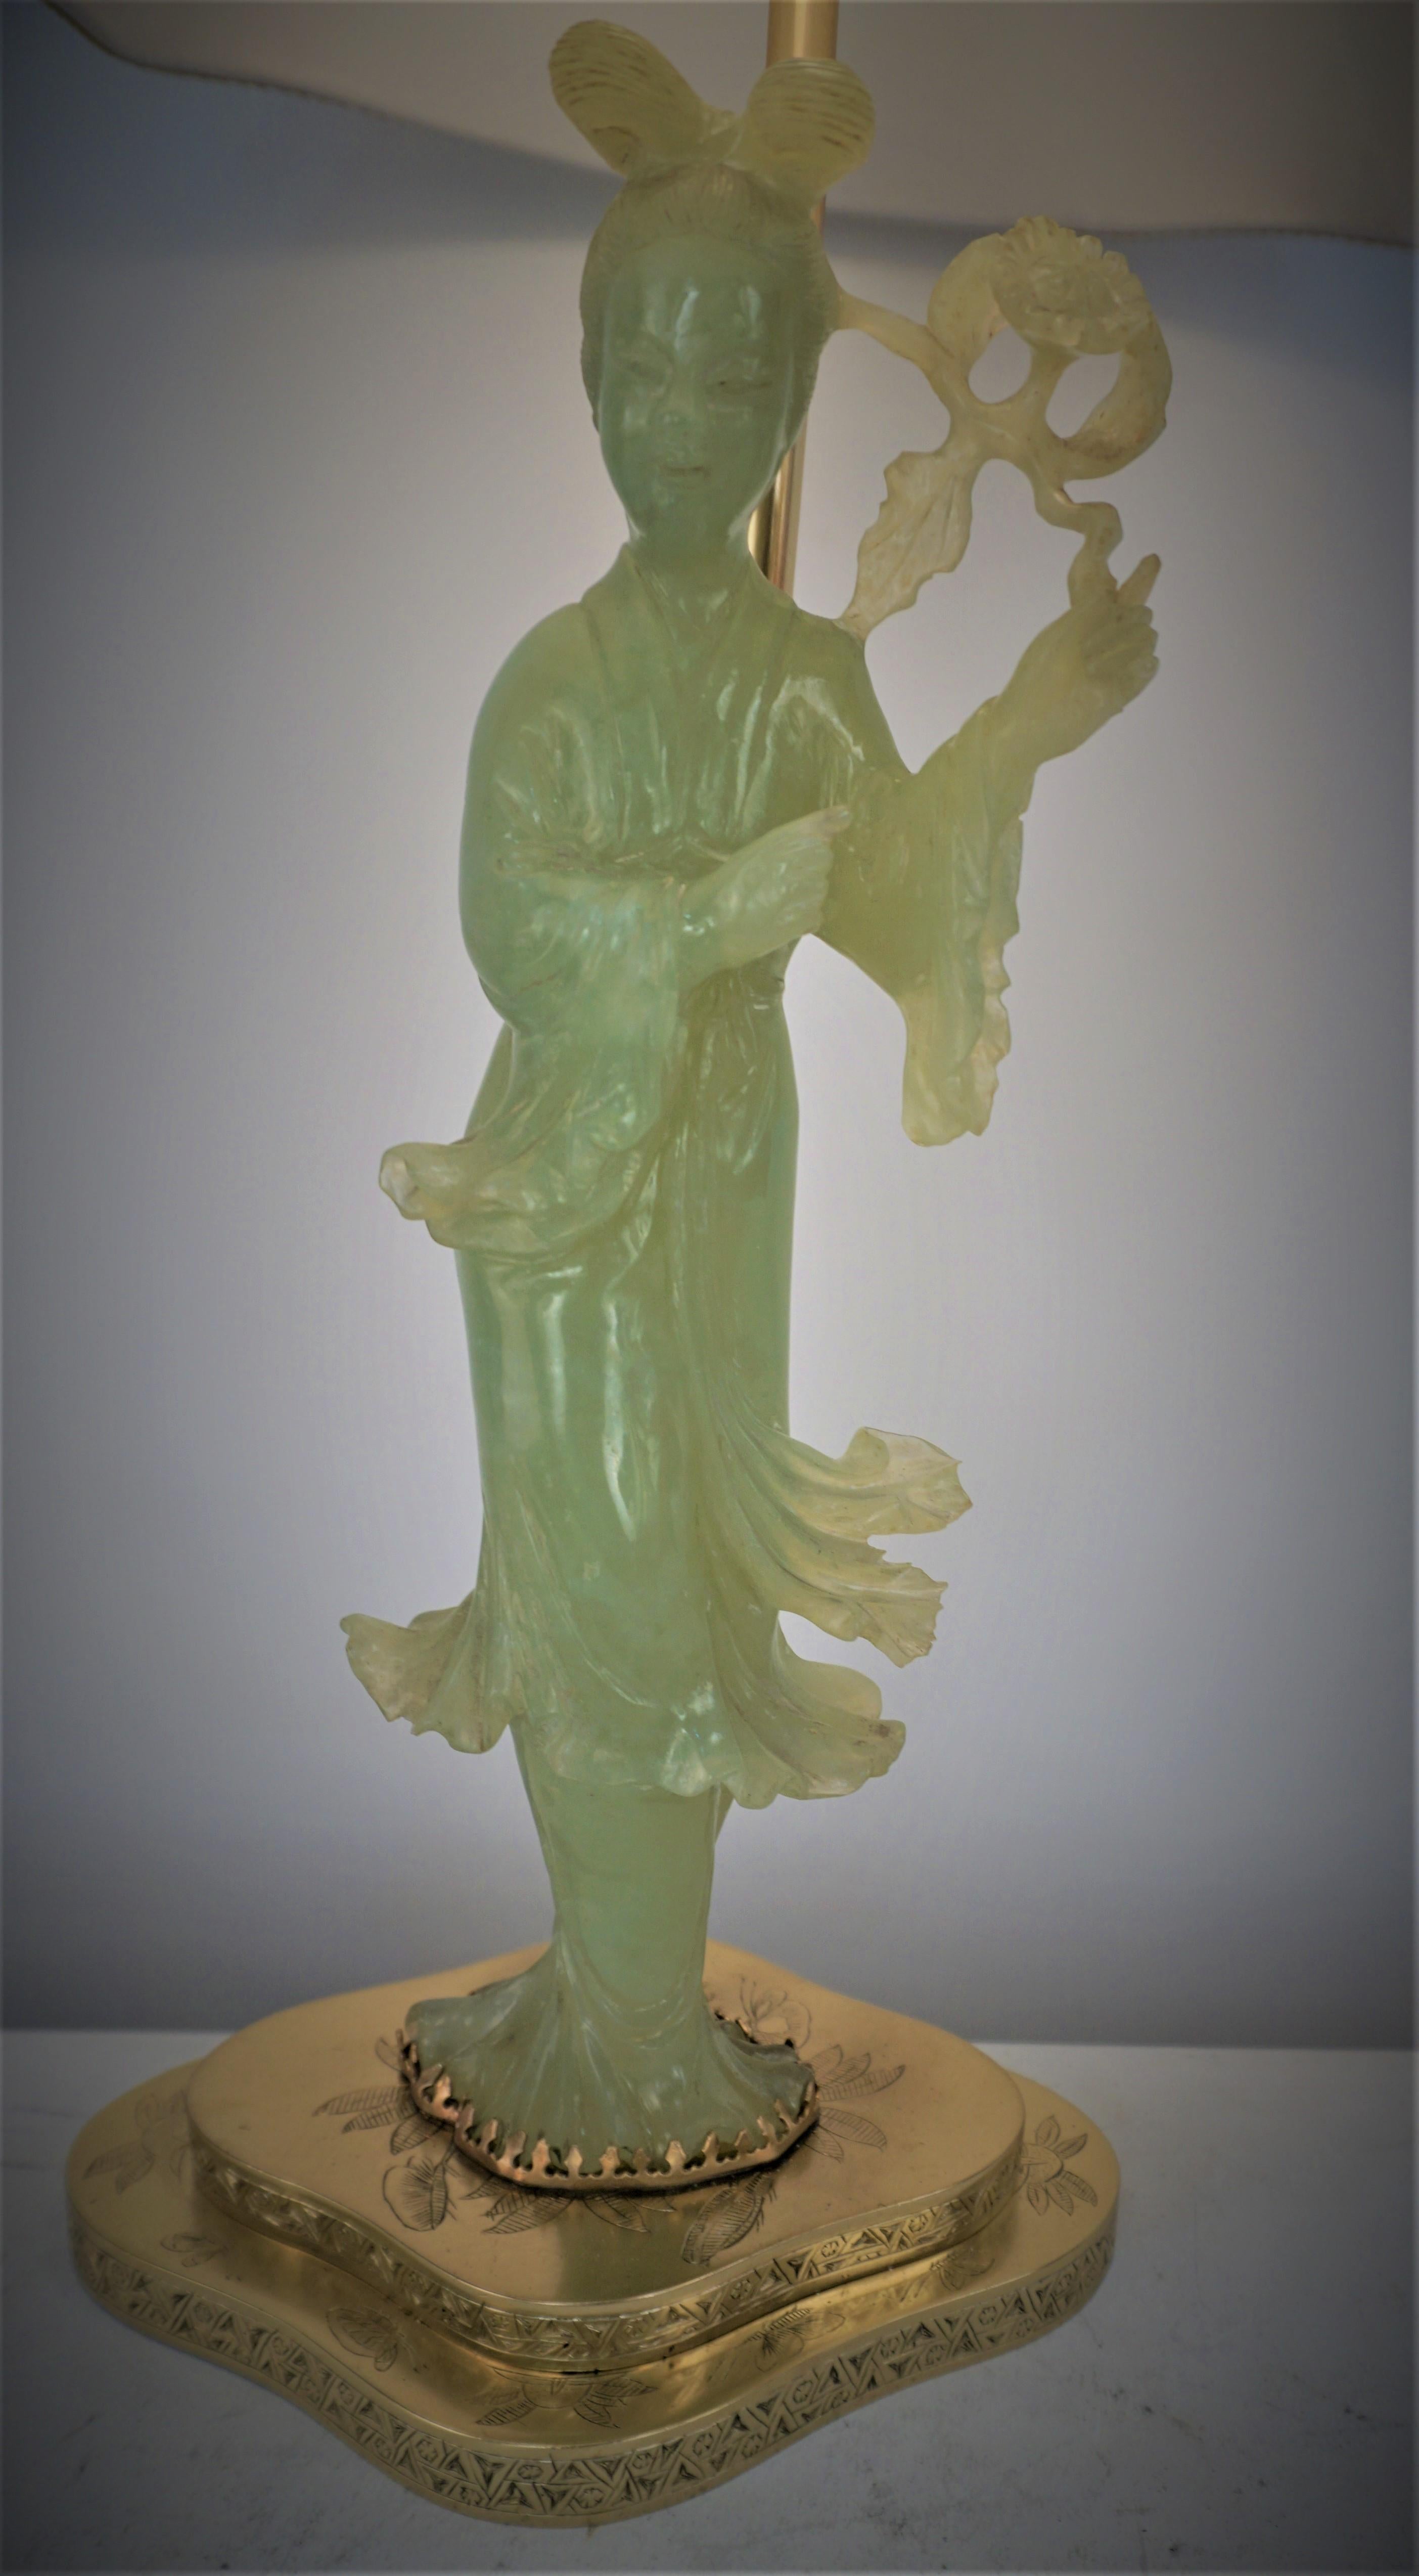 Lampe de table chinoise en jade sculpté, années 1930, avec abat-jour en soie, figures de Guan Yin sur base en bronze.
Recâblage professionnel.